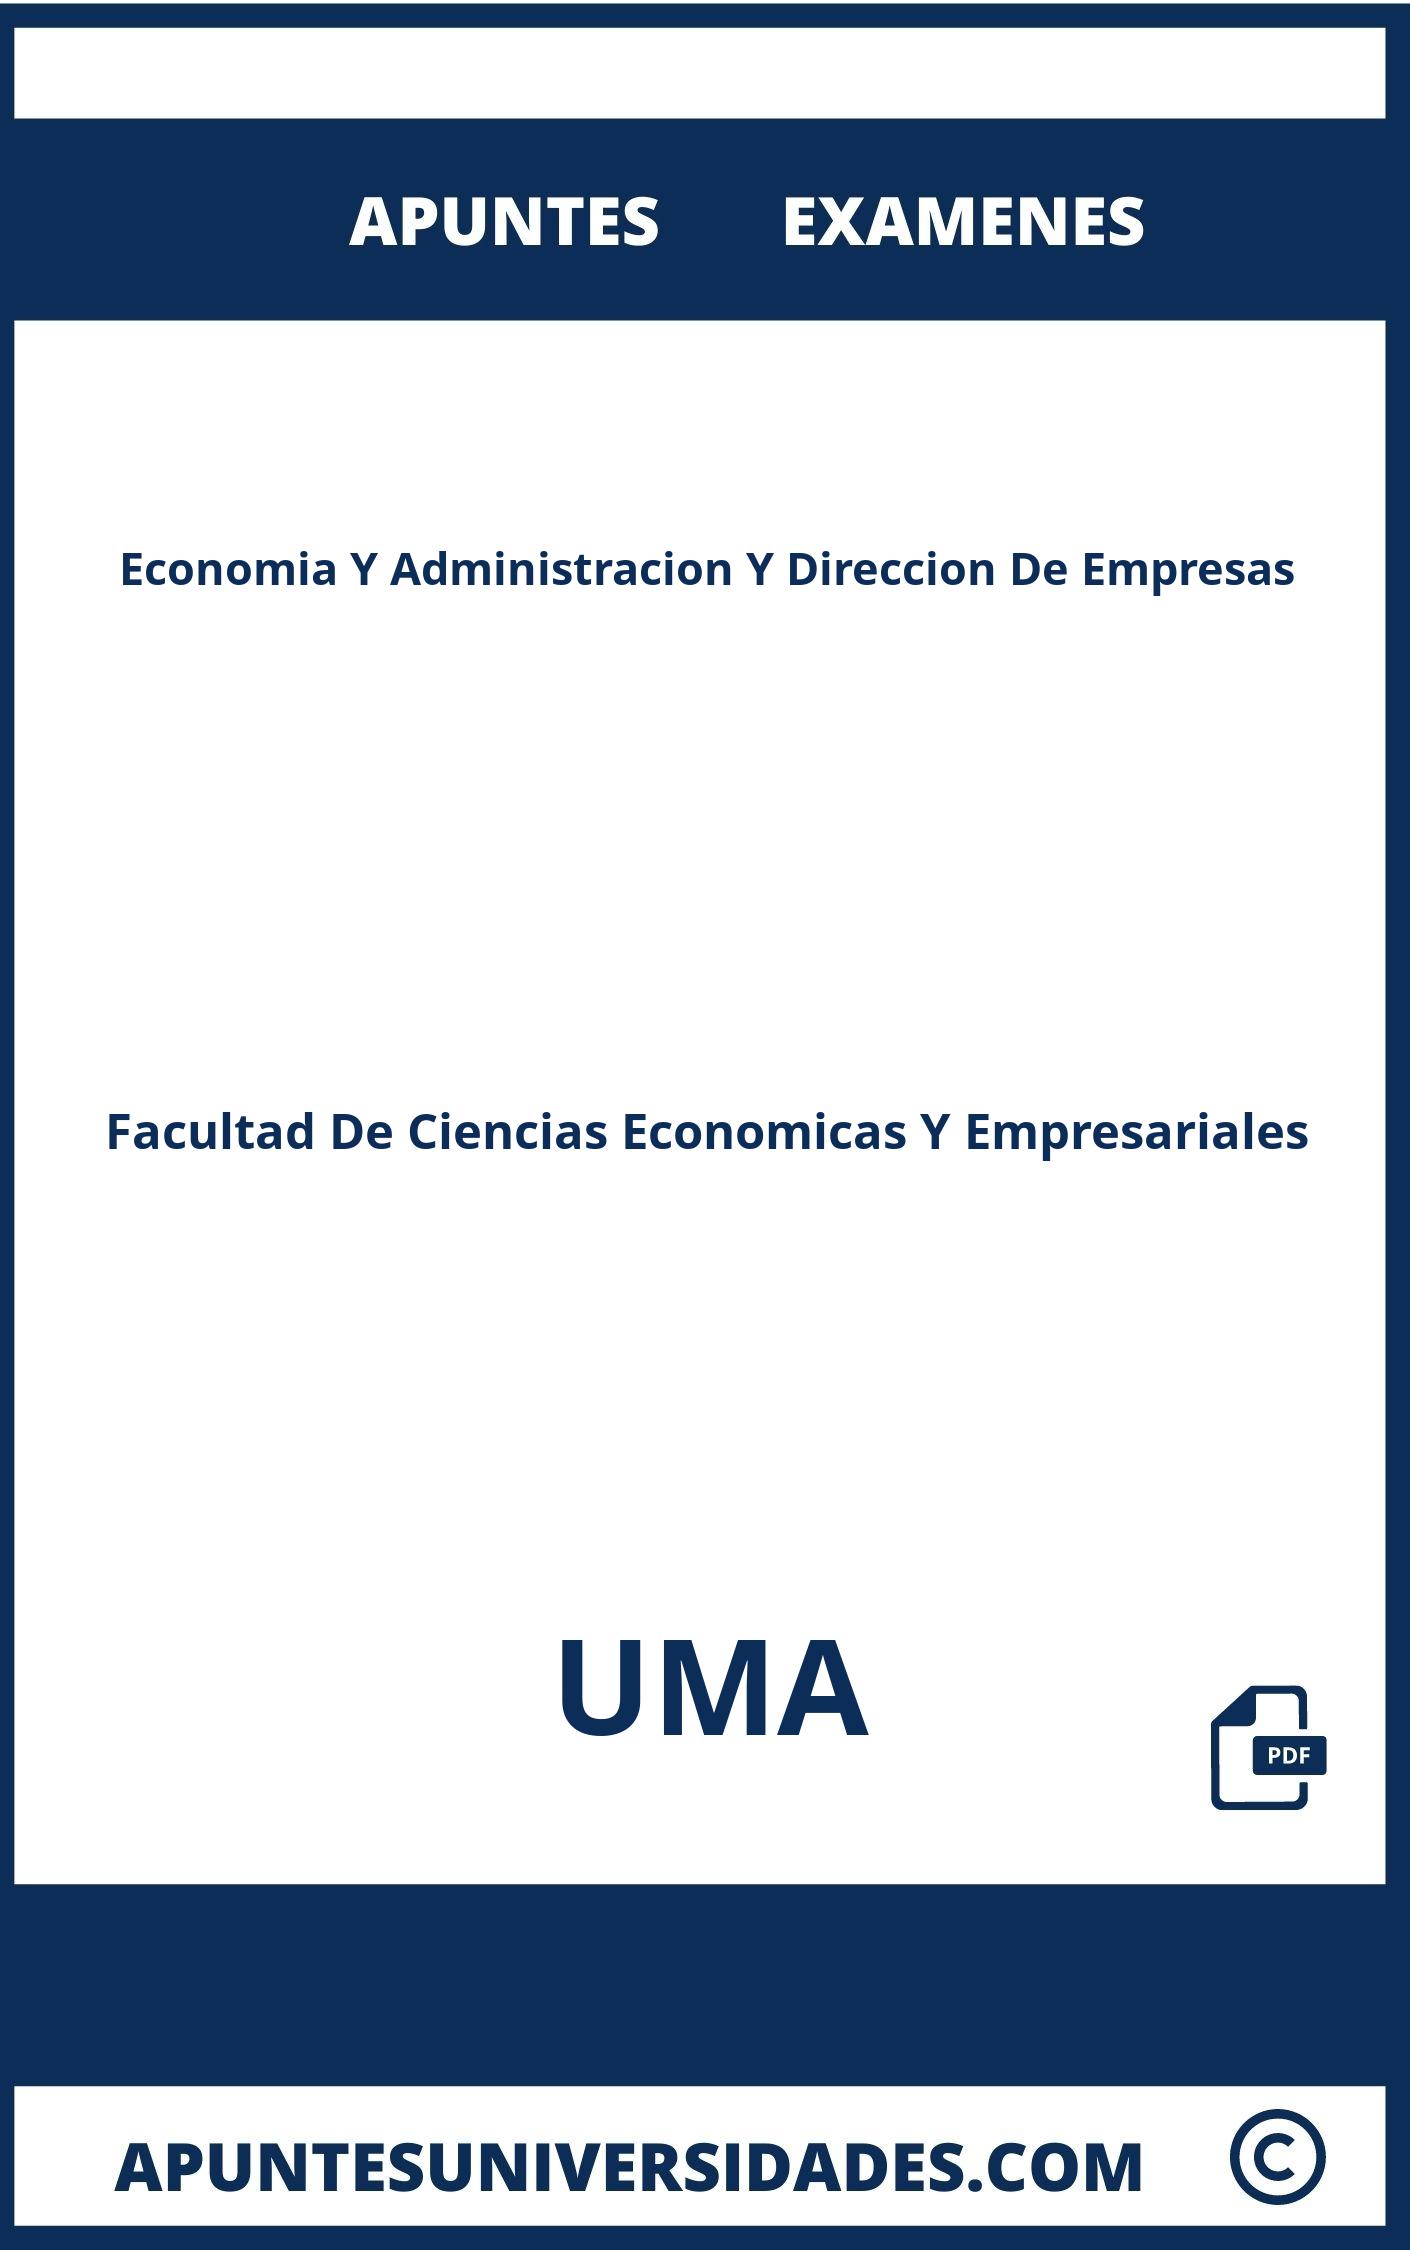 Apuntes Examenes Economia Y Administracion Y Direccion De Empresas UMA